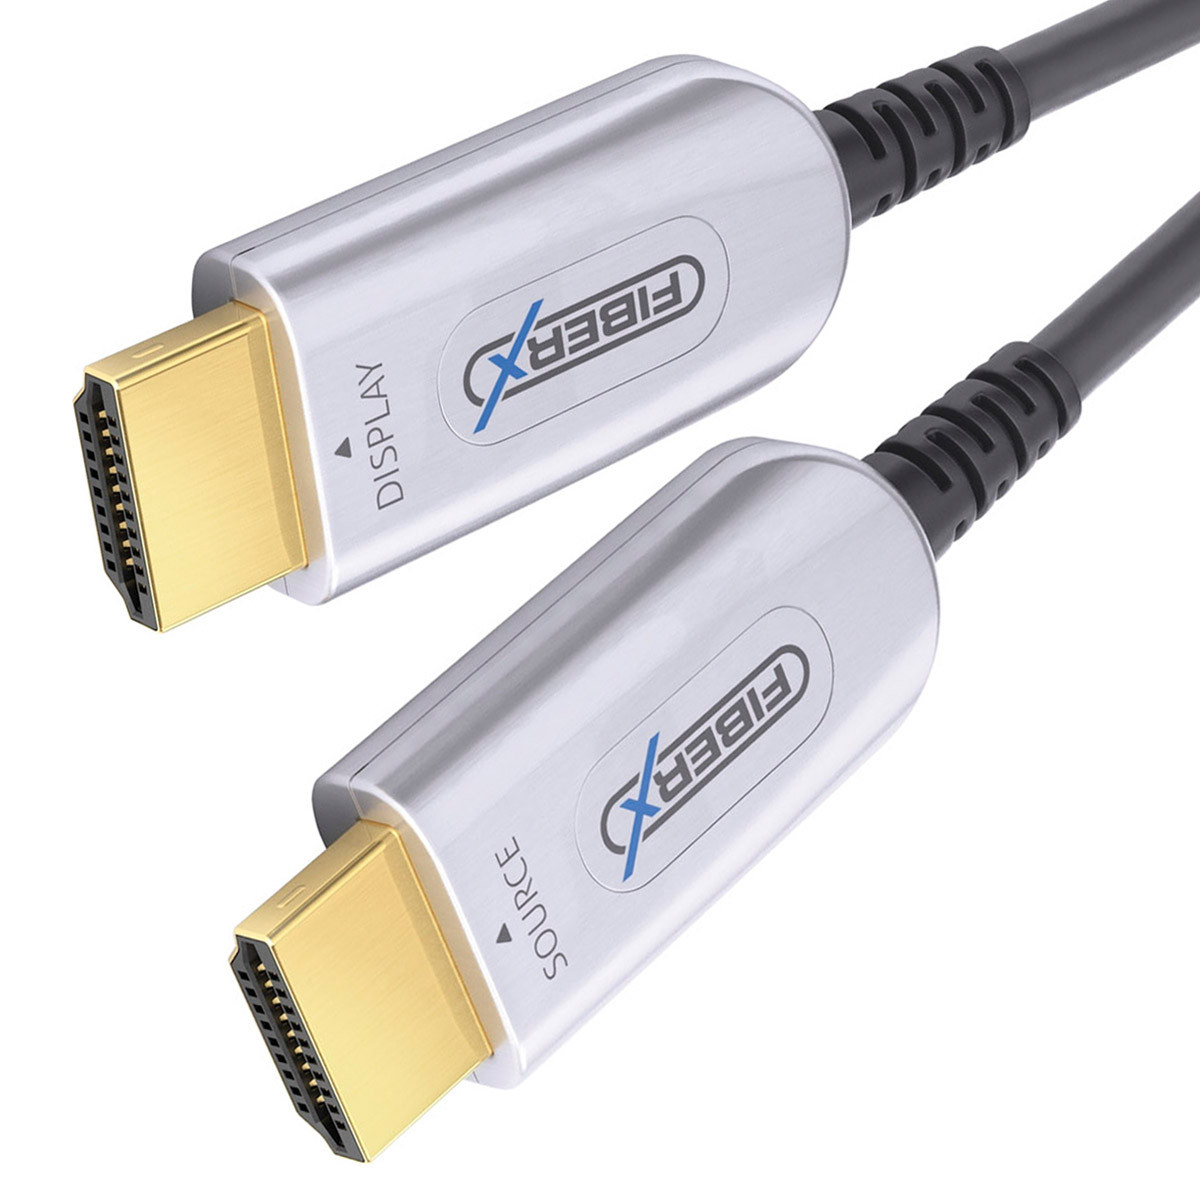 PureLink Przewód światłowodowy HDMI fiberx 5m FXI350-005